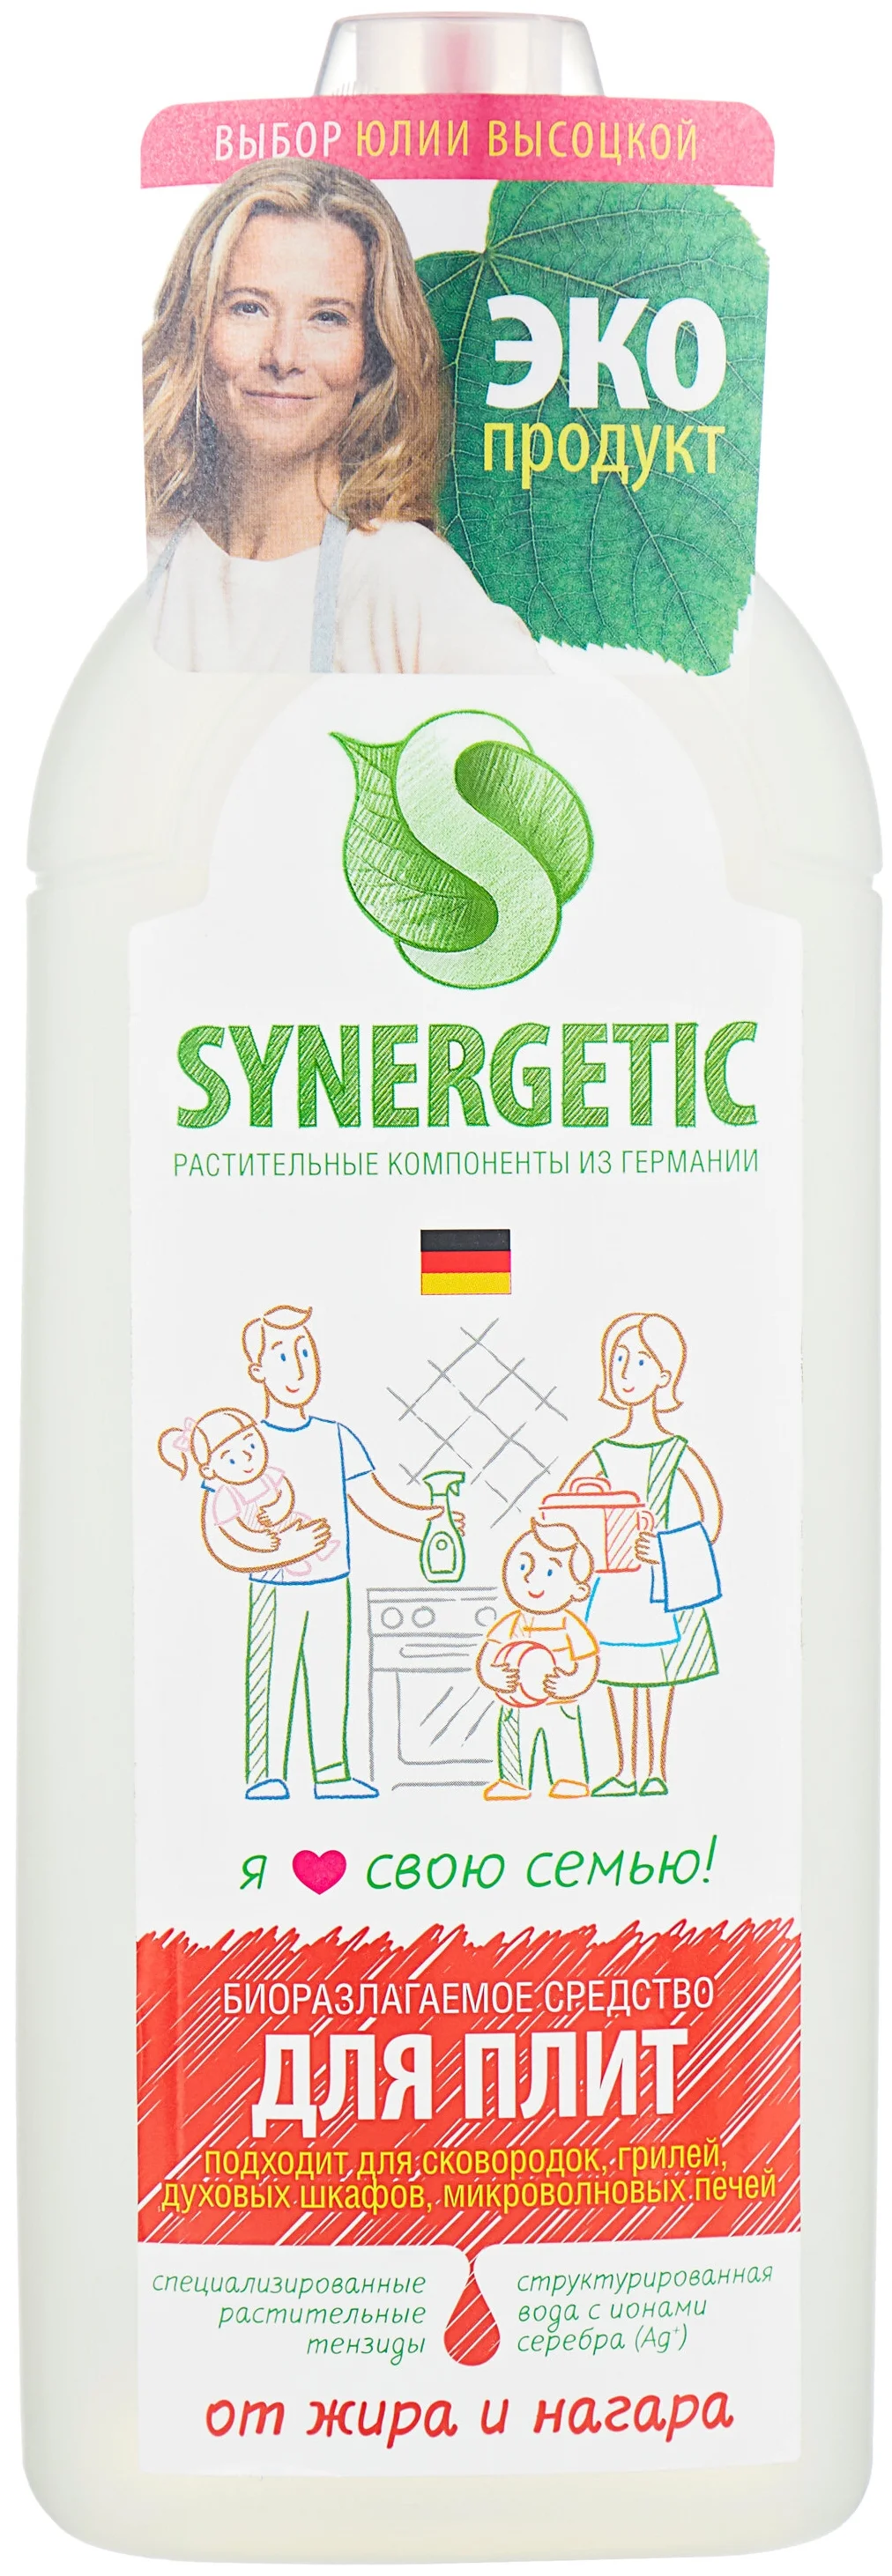 Чистящее средство для плит Synergetic - особенности: антибактериальное, биоразлагаемое